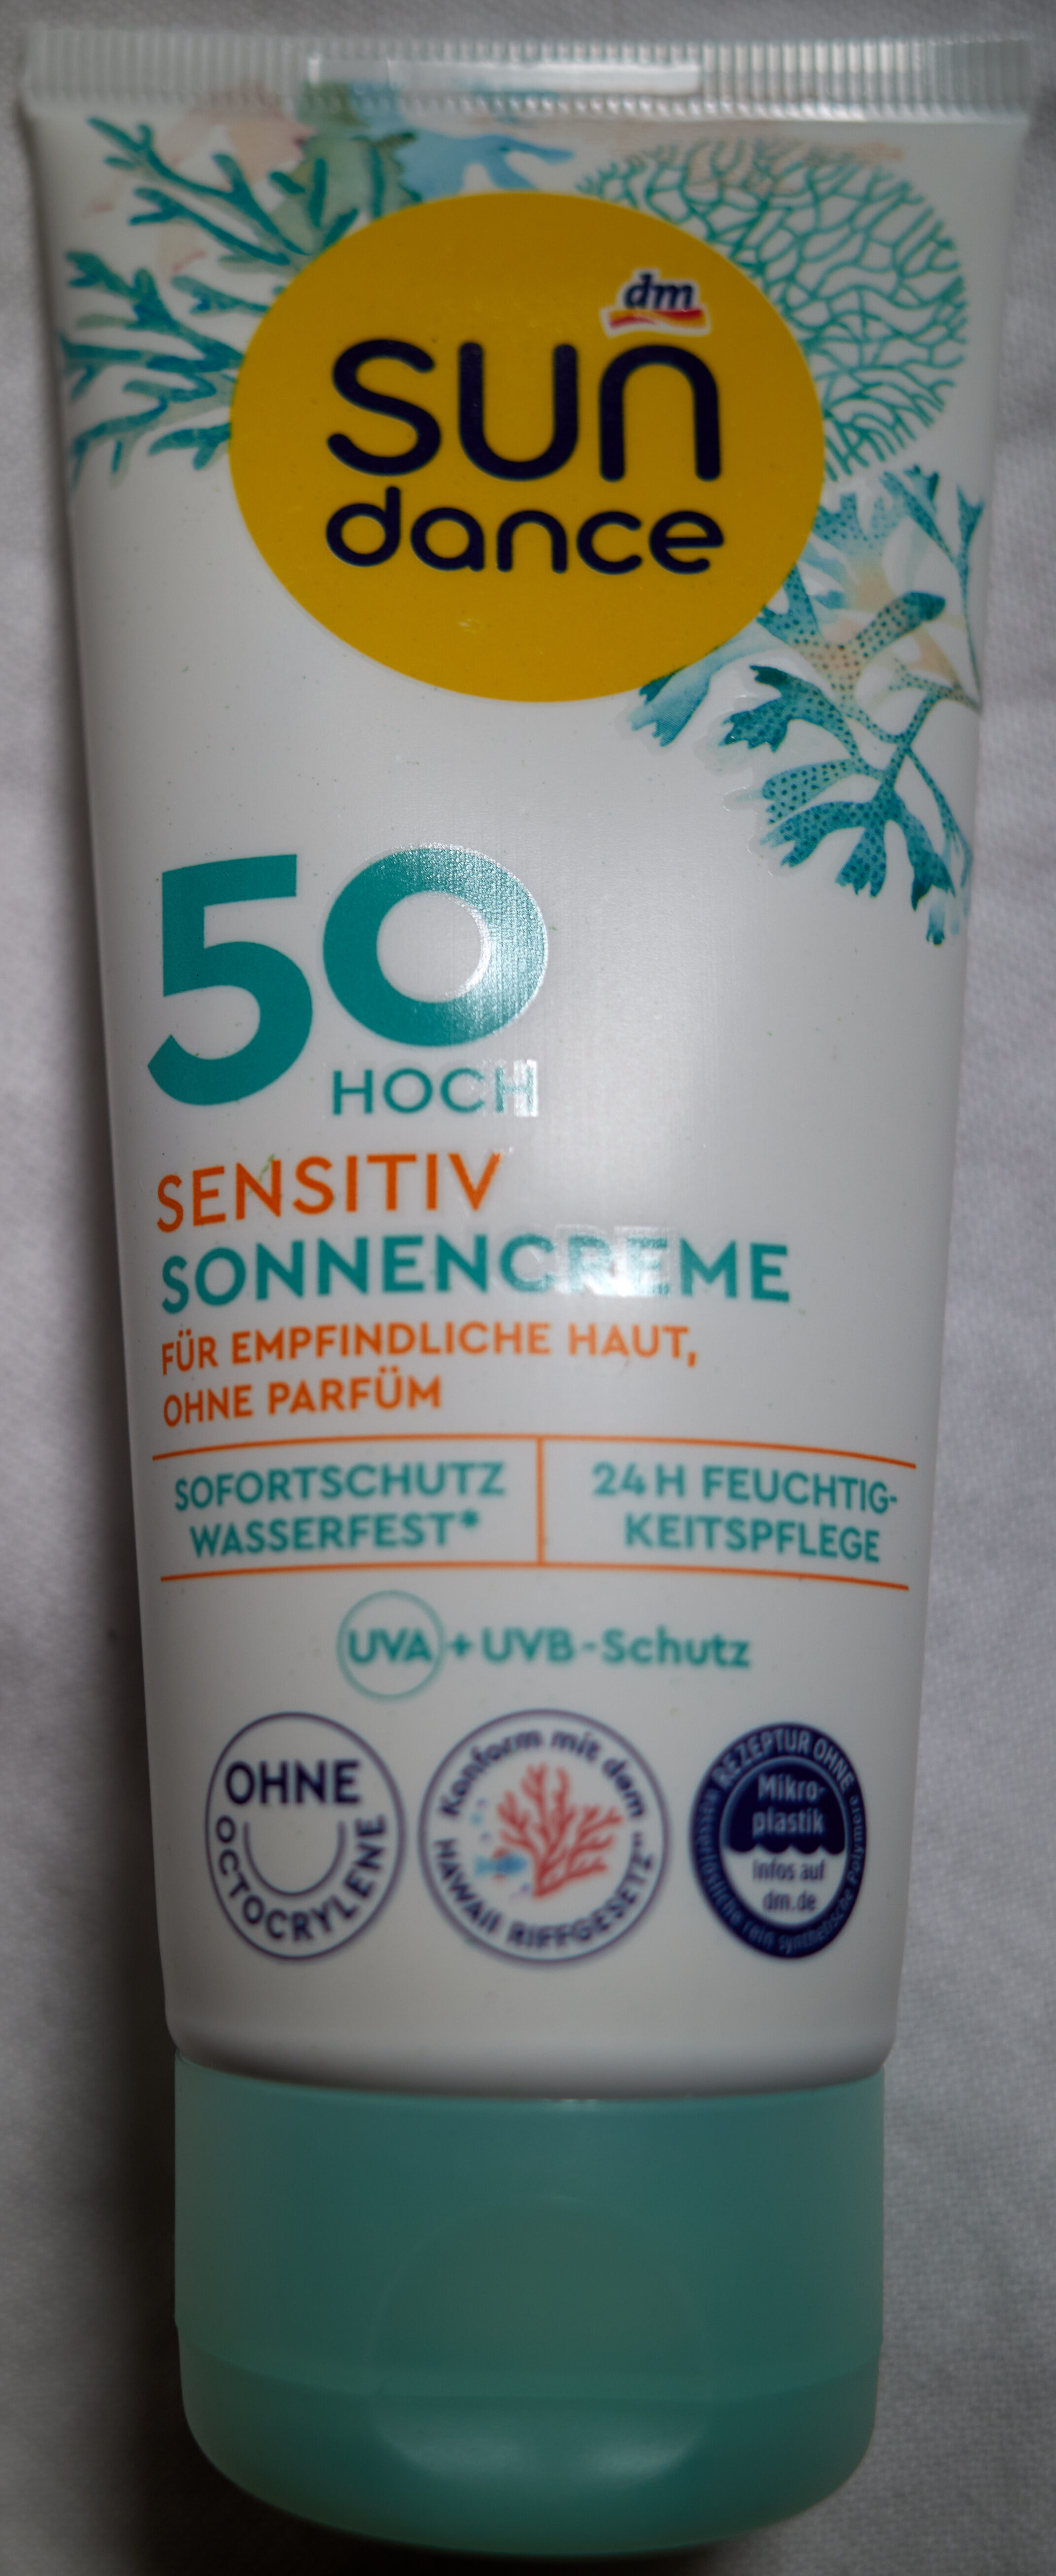 Sonnencreme sensitiv LSF 50 - Produkt - de